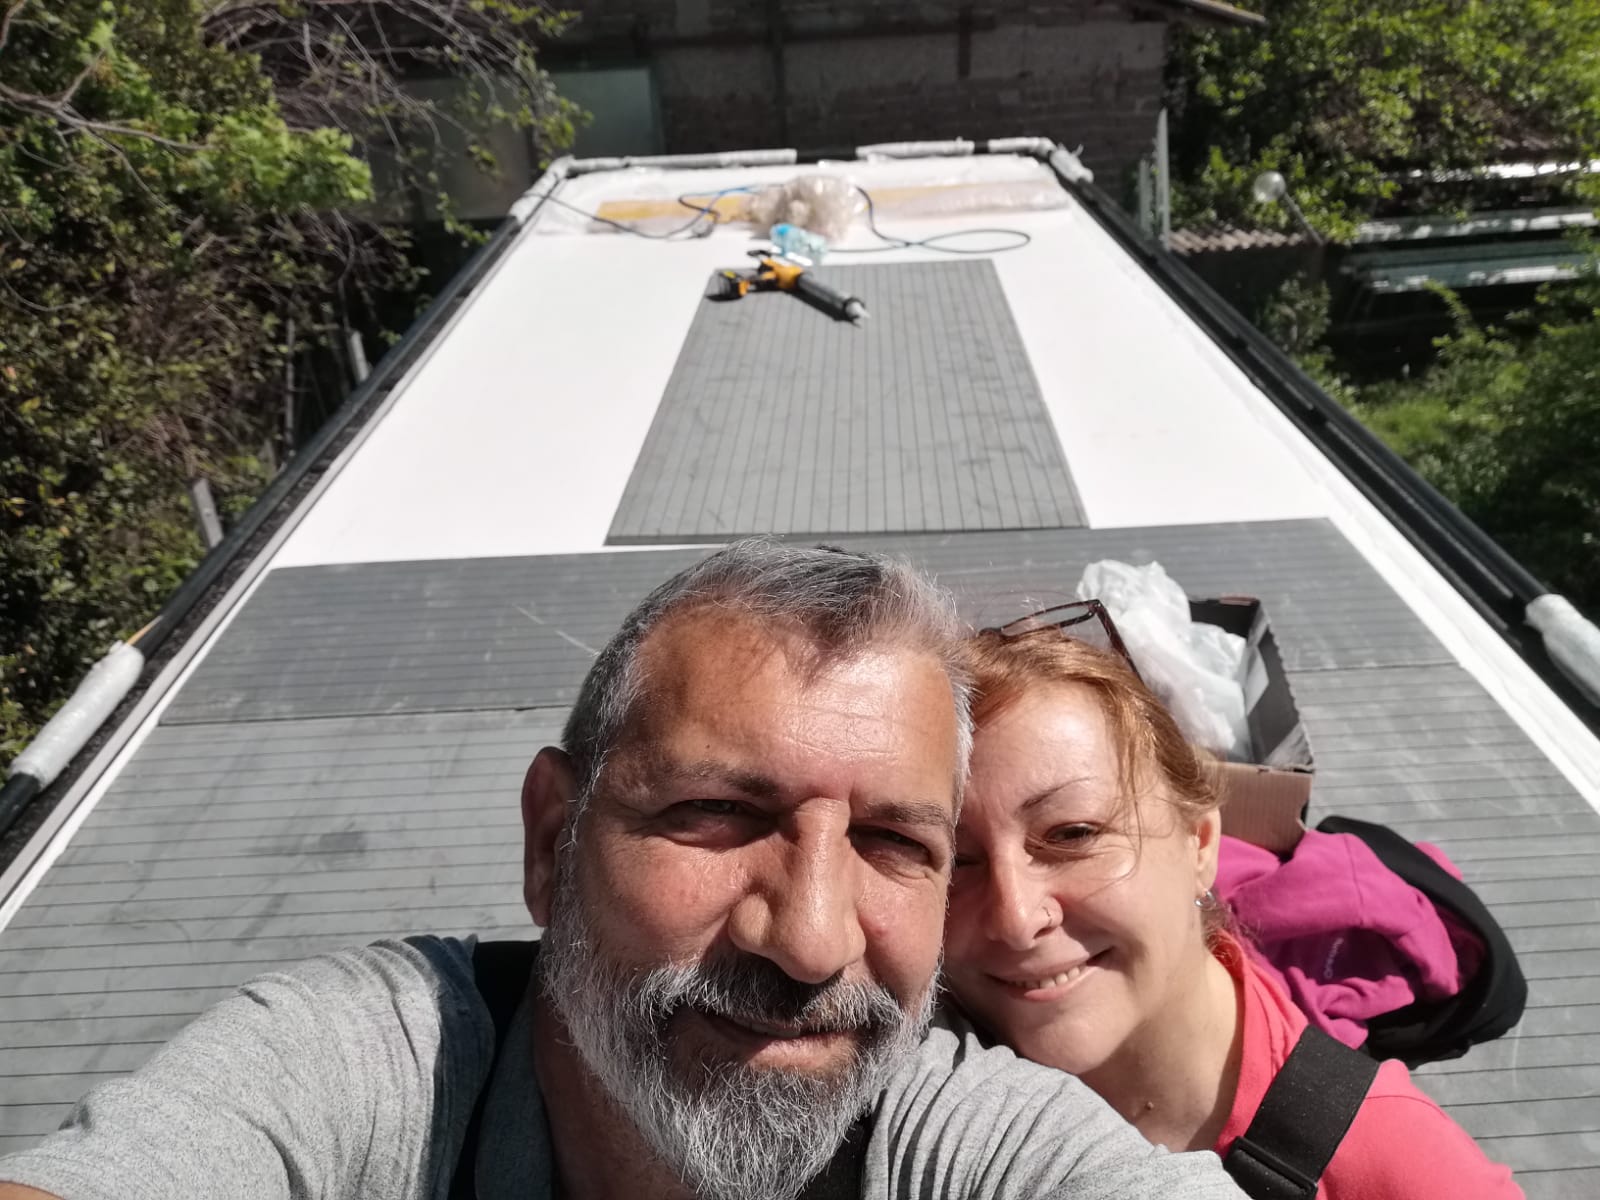 Cristina e Marco: la coppia over 50 che ha venduto casa per viaggiare